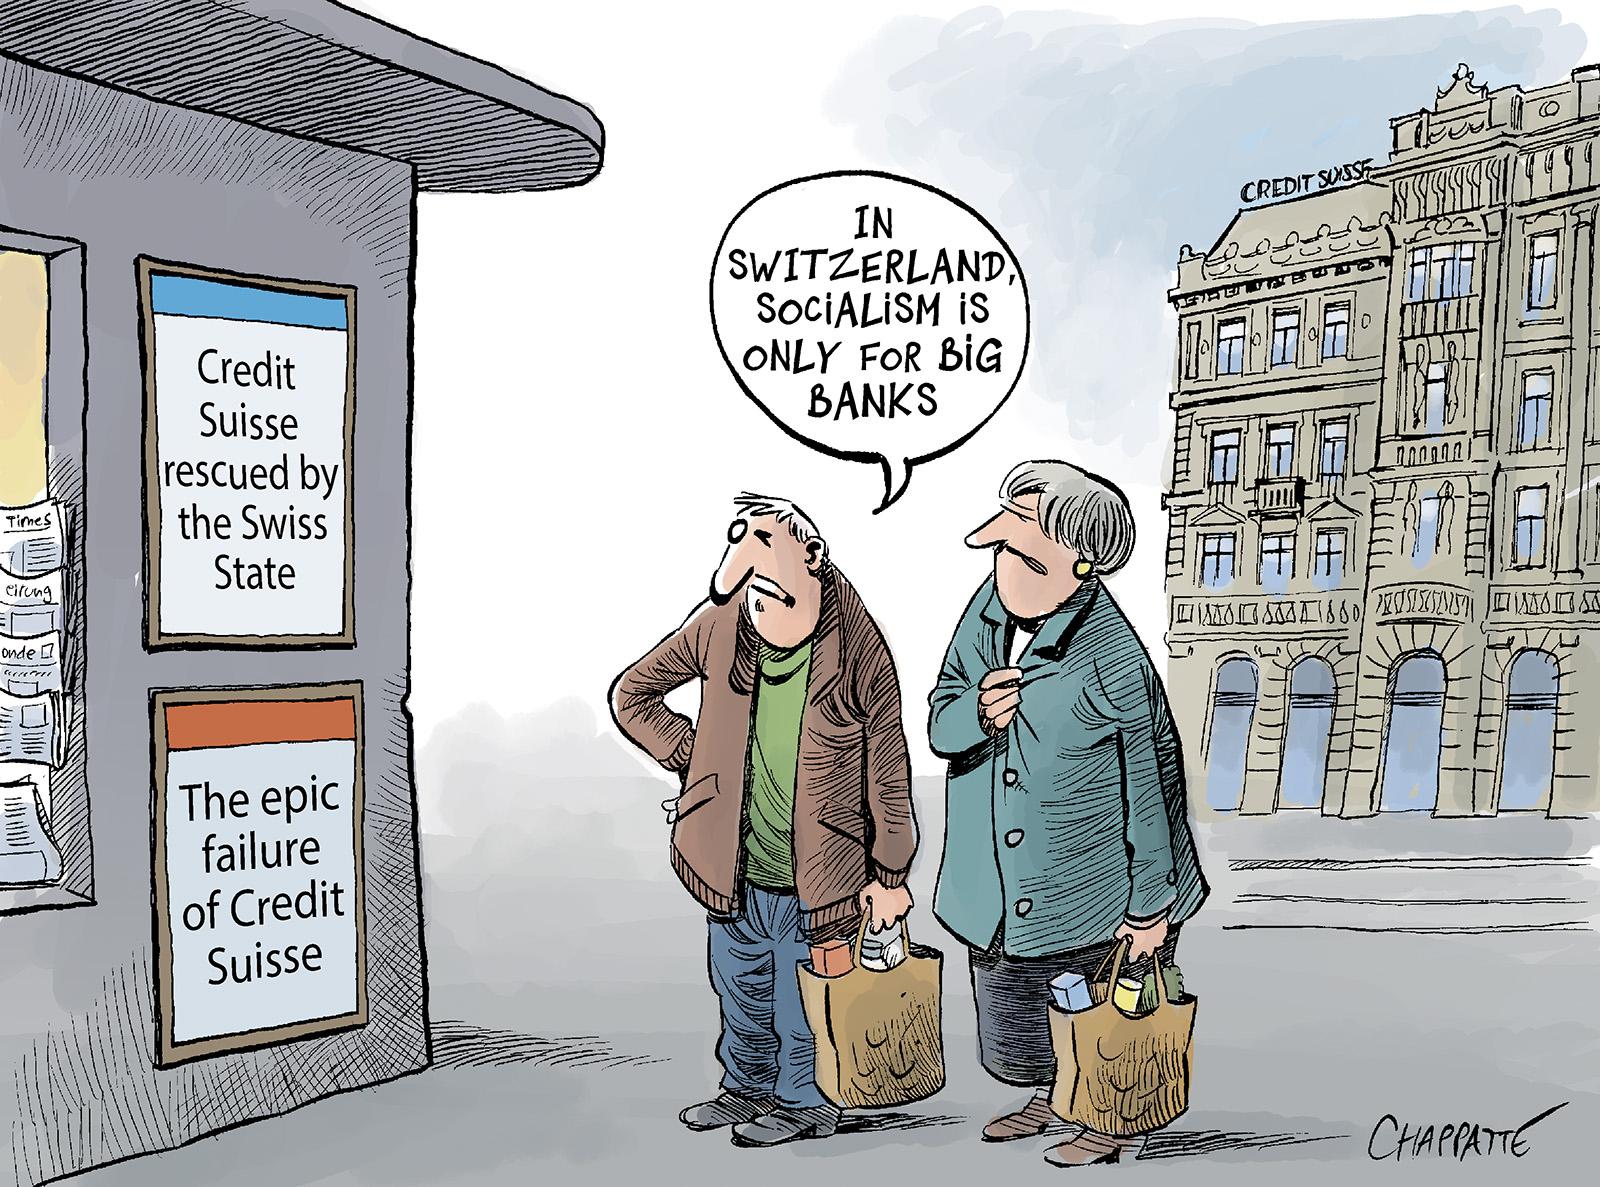 Rescuing Credit Suisse